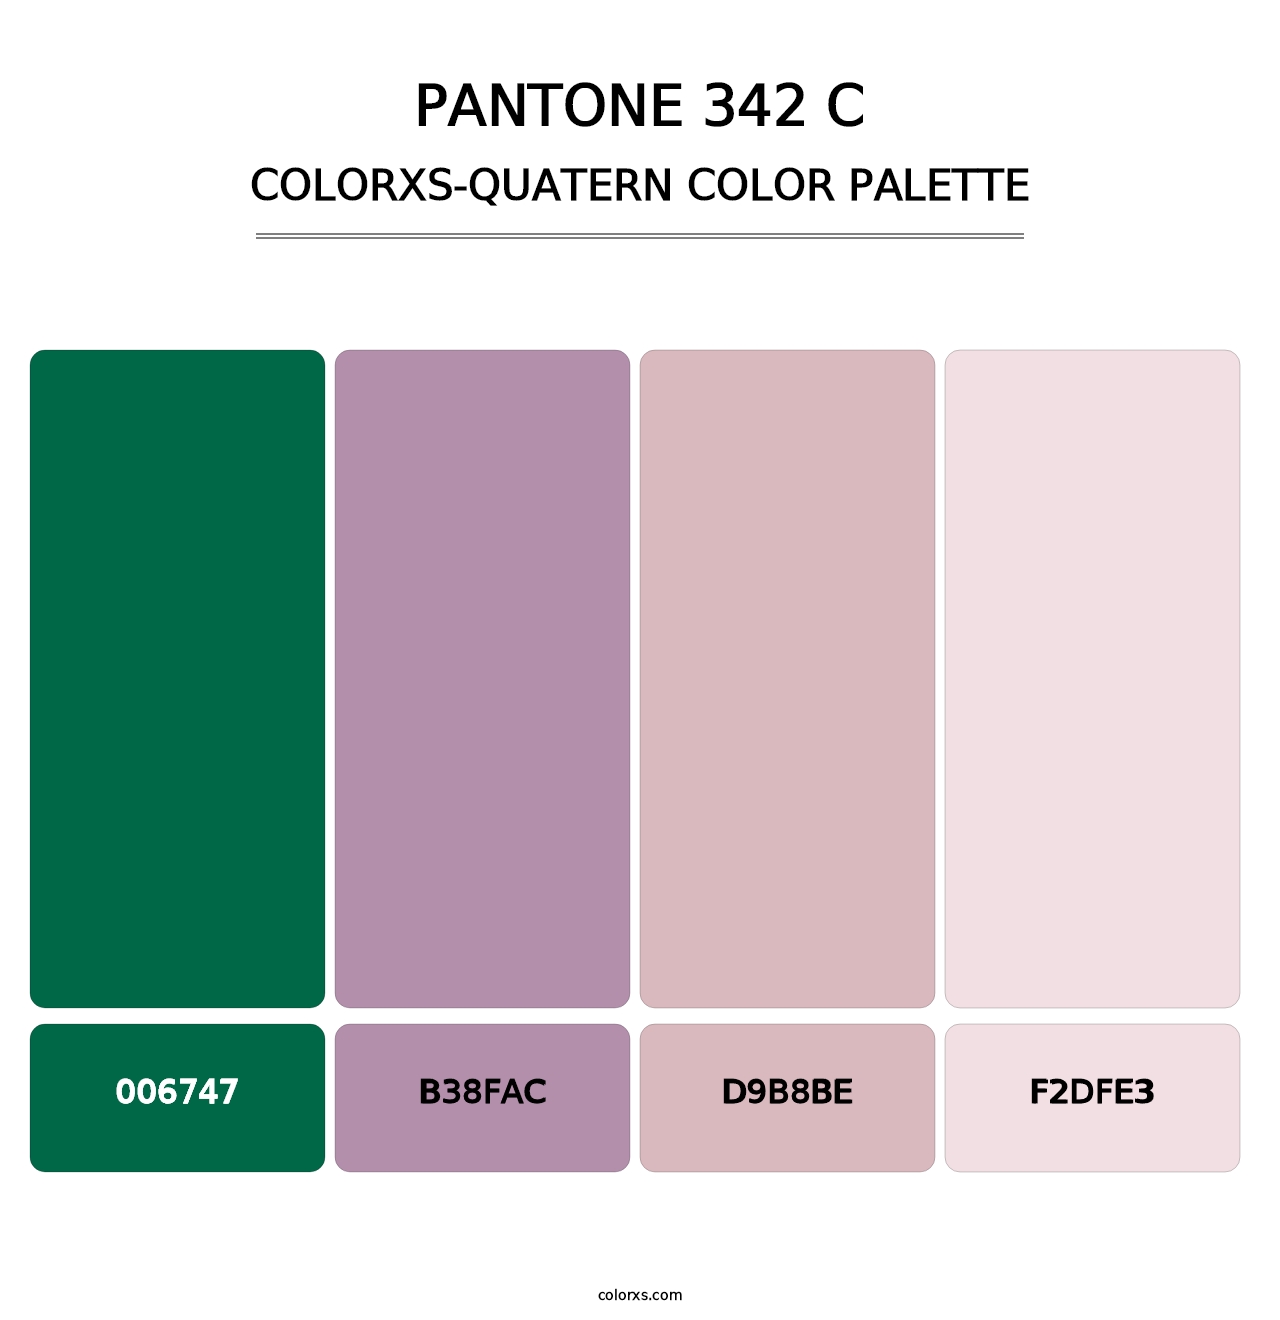 PANTONE 342 C - Colorxs Quatern Palette